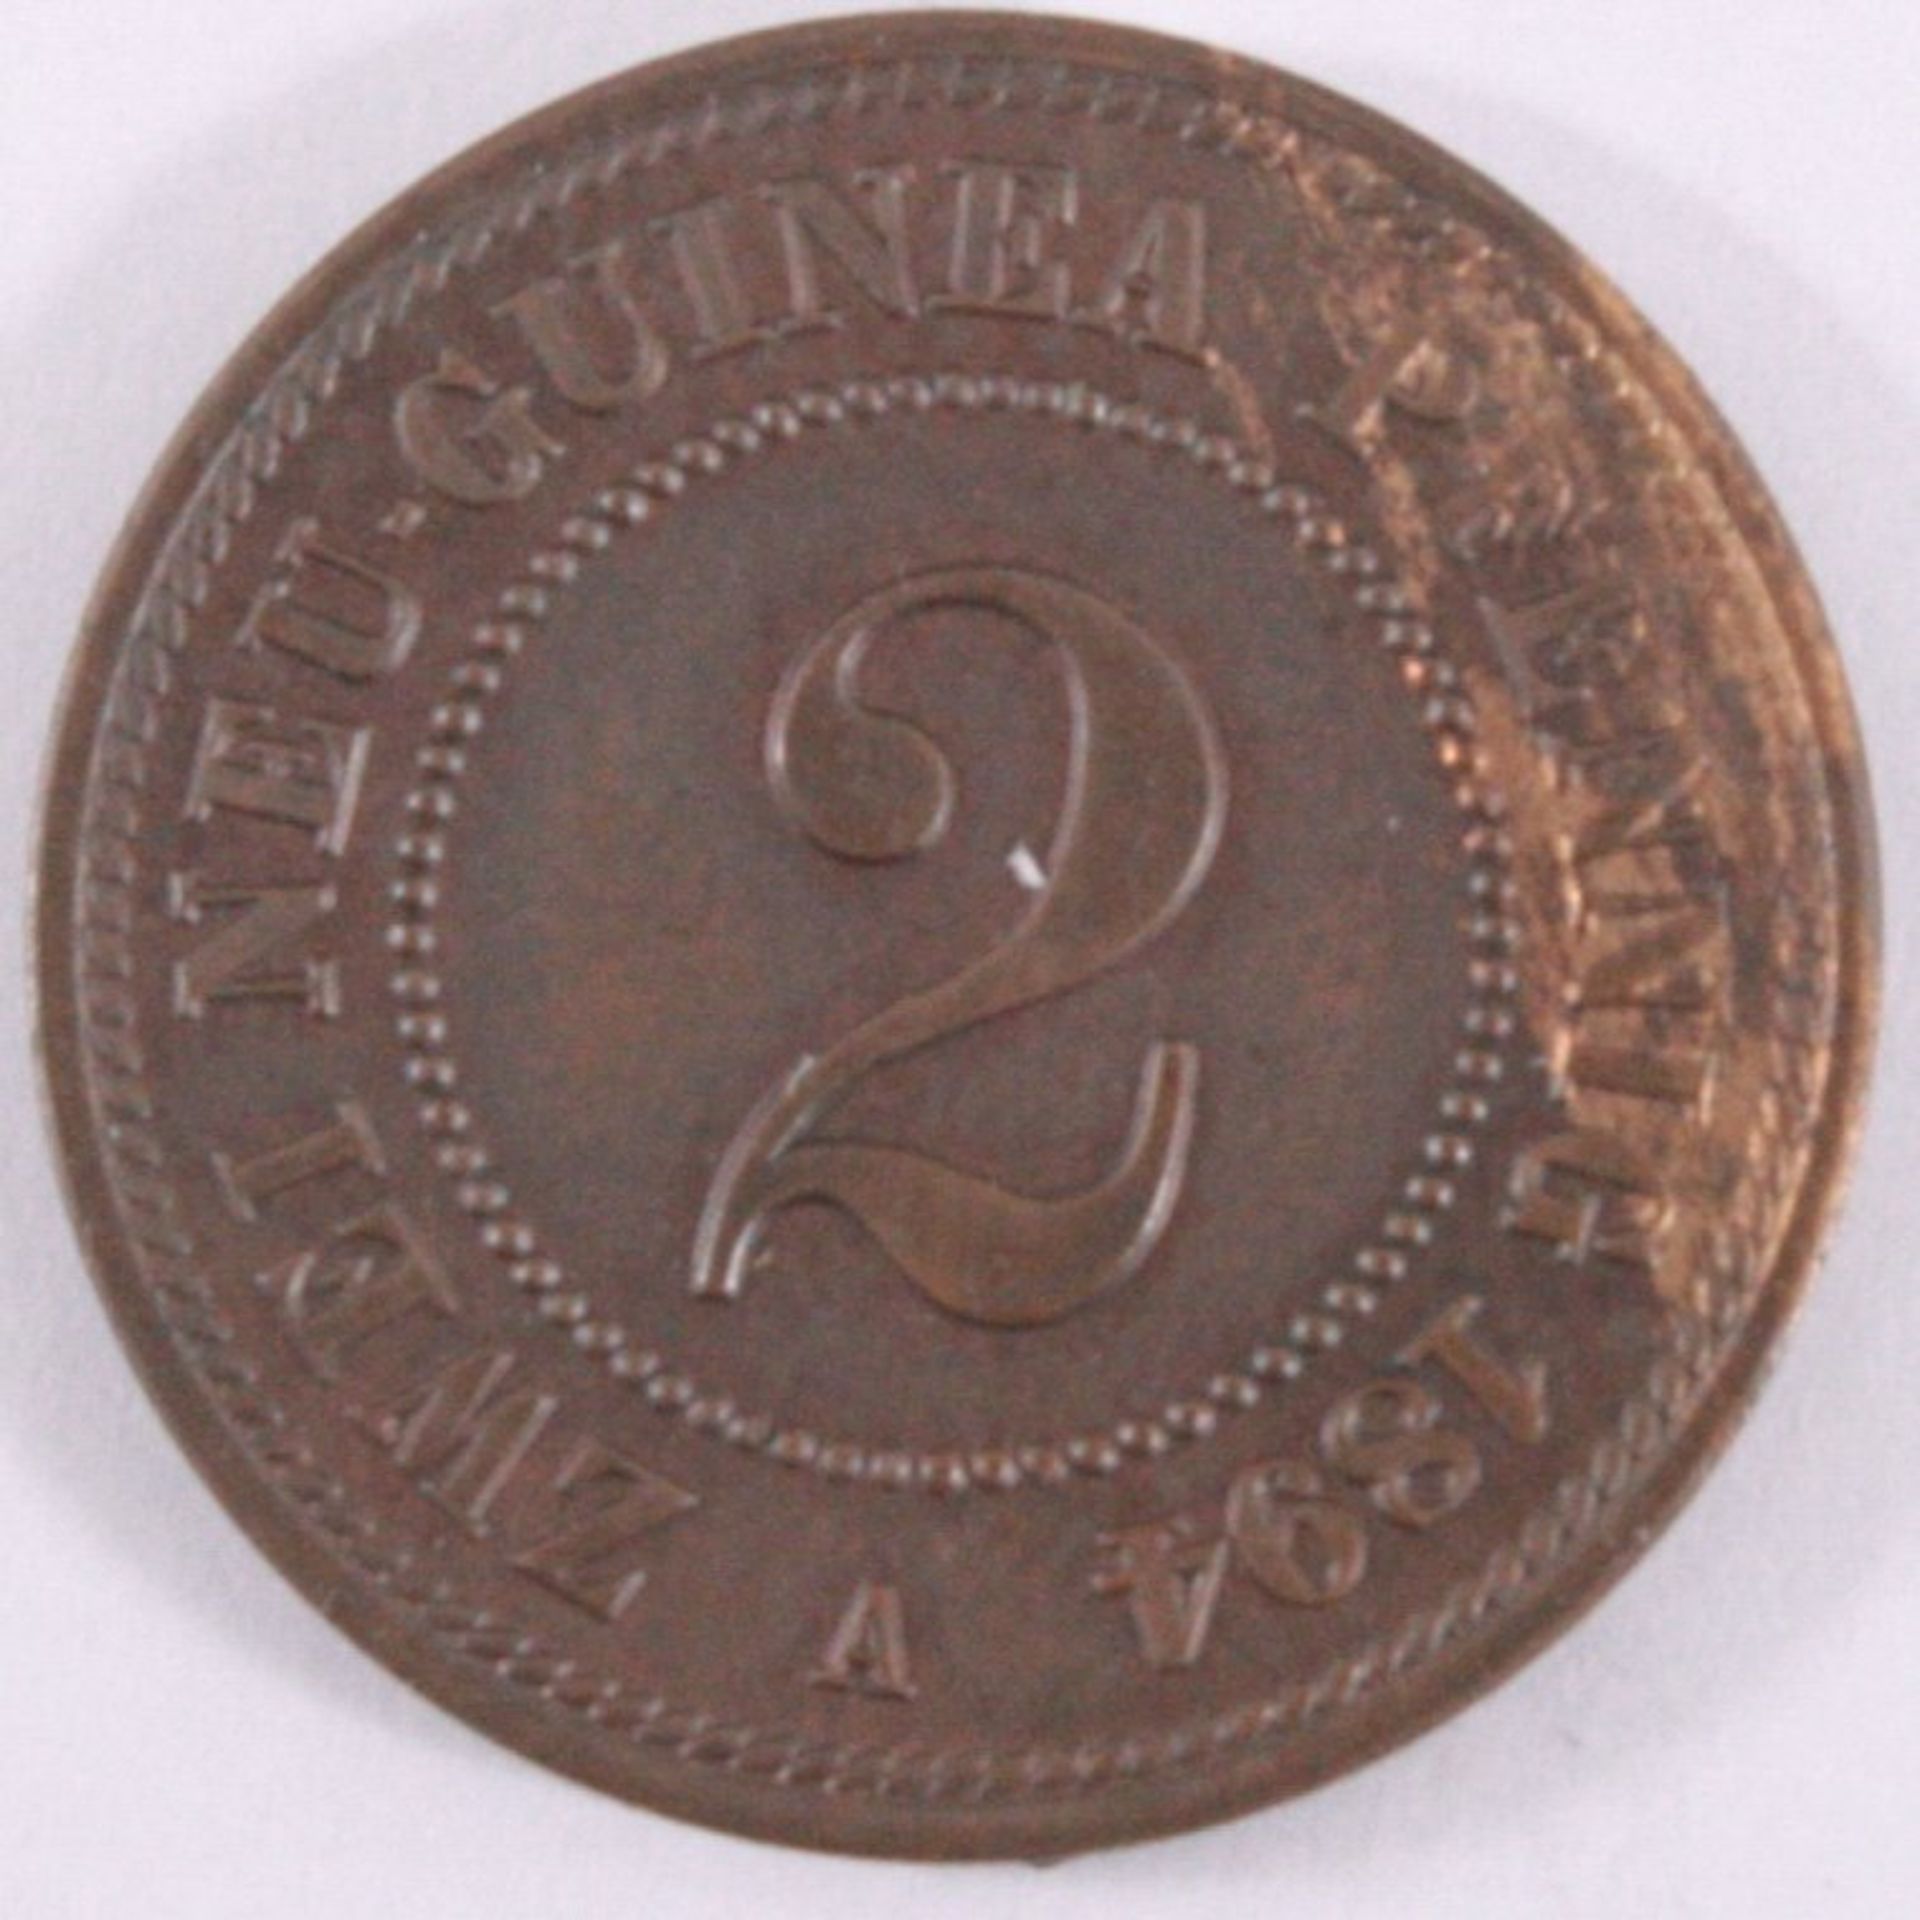 2 Neu - Guinea Pfennig 1894 AKupfer, Auflage 250 000, 3,33 g, J 702, ss/vzgl. Mit MünzpaßMDM